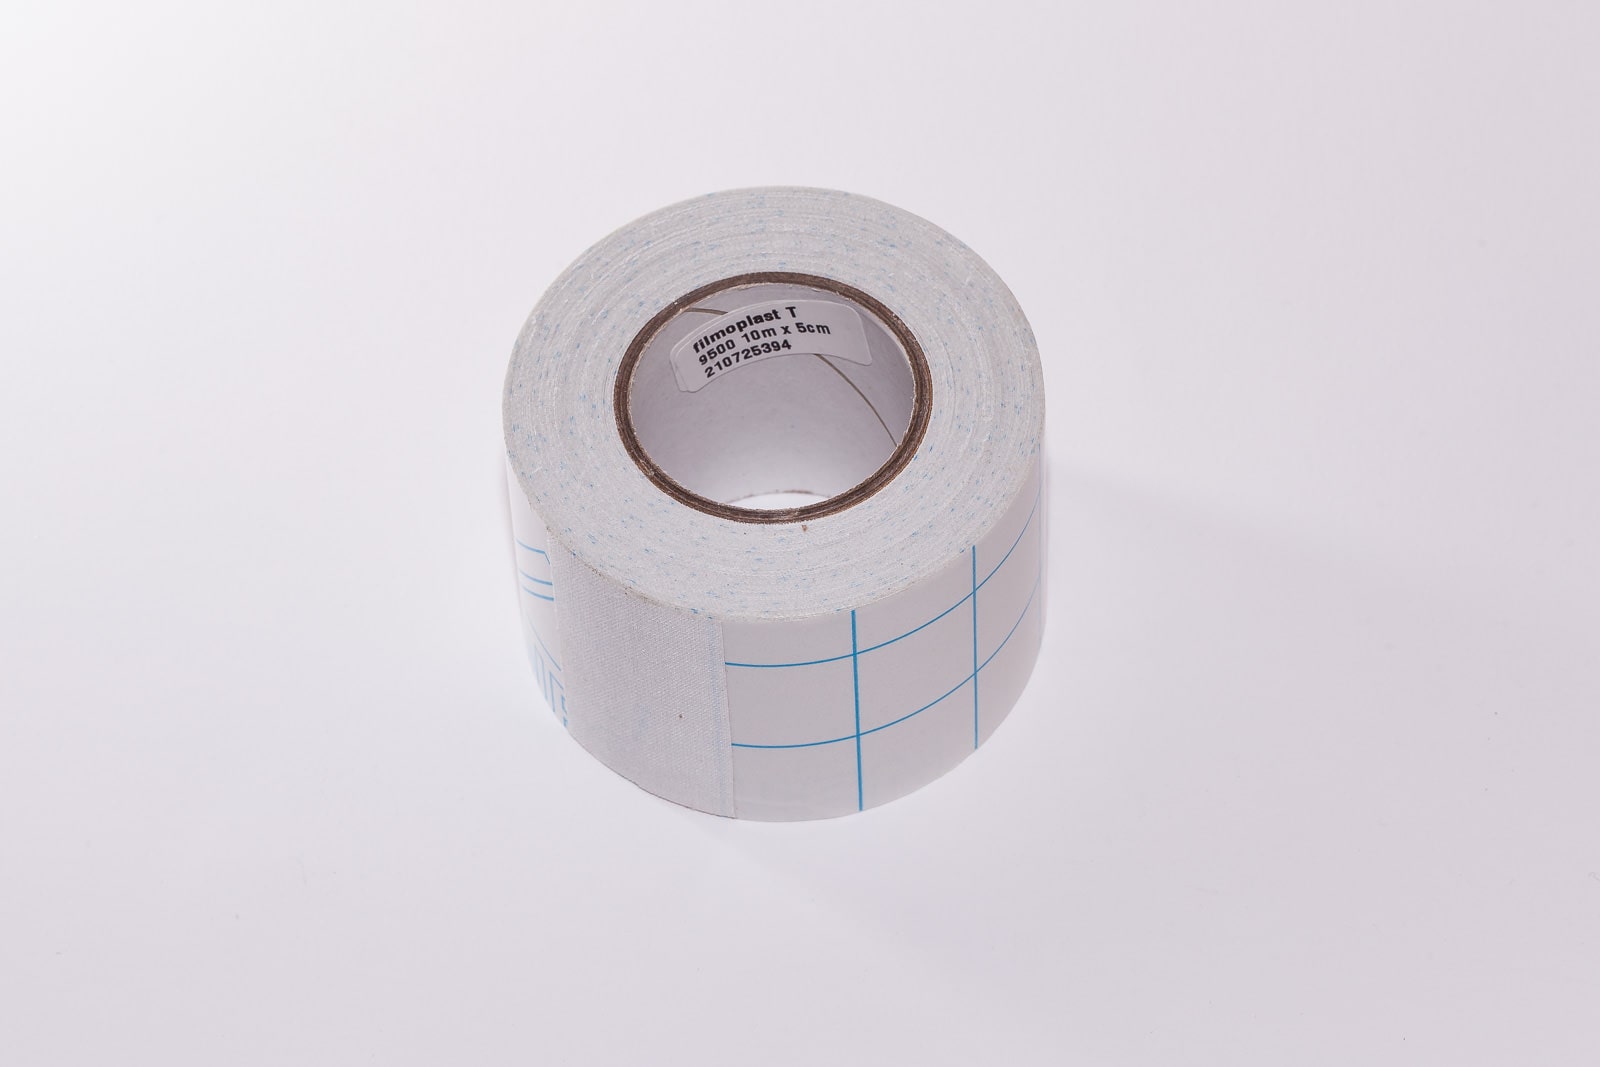 Filmoplast T ist ein weißes 5 cm breites Textilklebeband der Marke Filmolux.